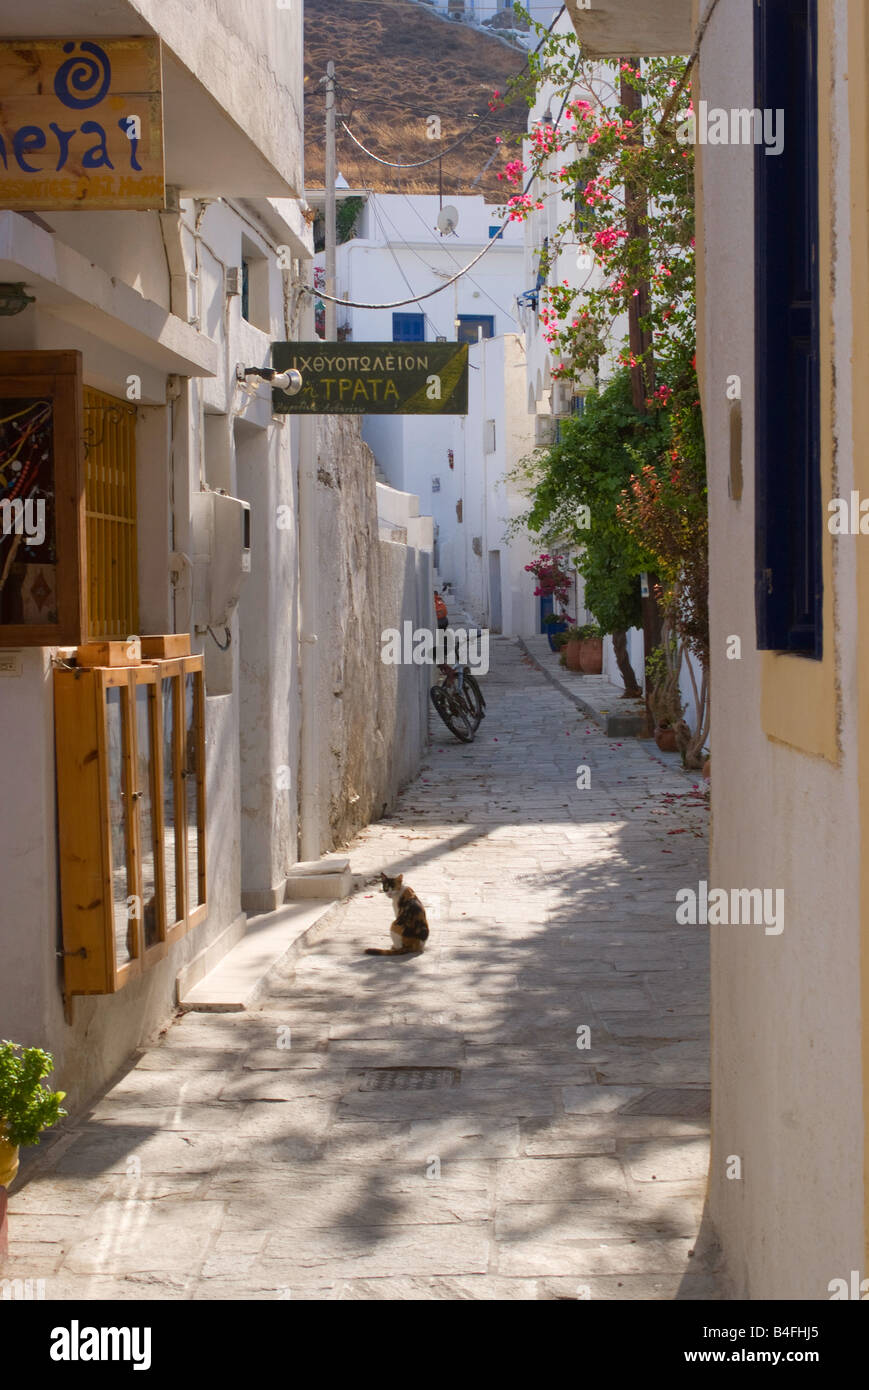 Eine griechische Katze sitzt in Gasse genießen Sonne in Livadi Stadt Insel Serifos Kykladen Ägäis Griechenland Stockfoto